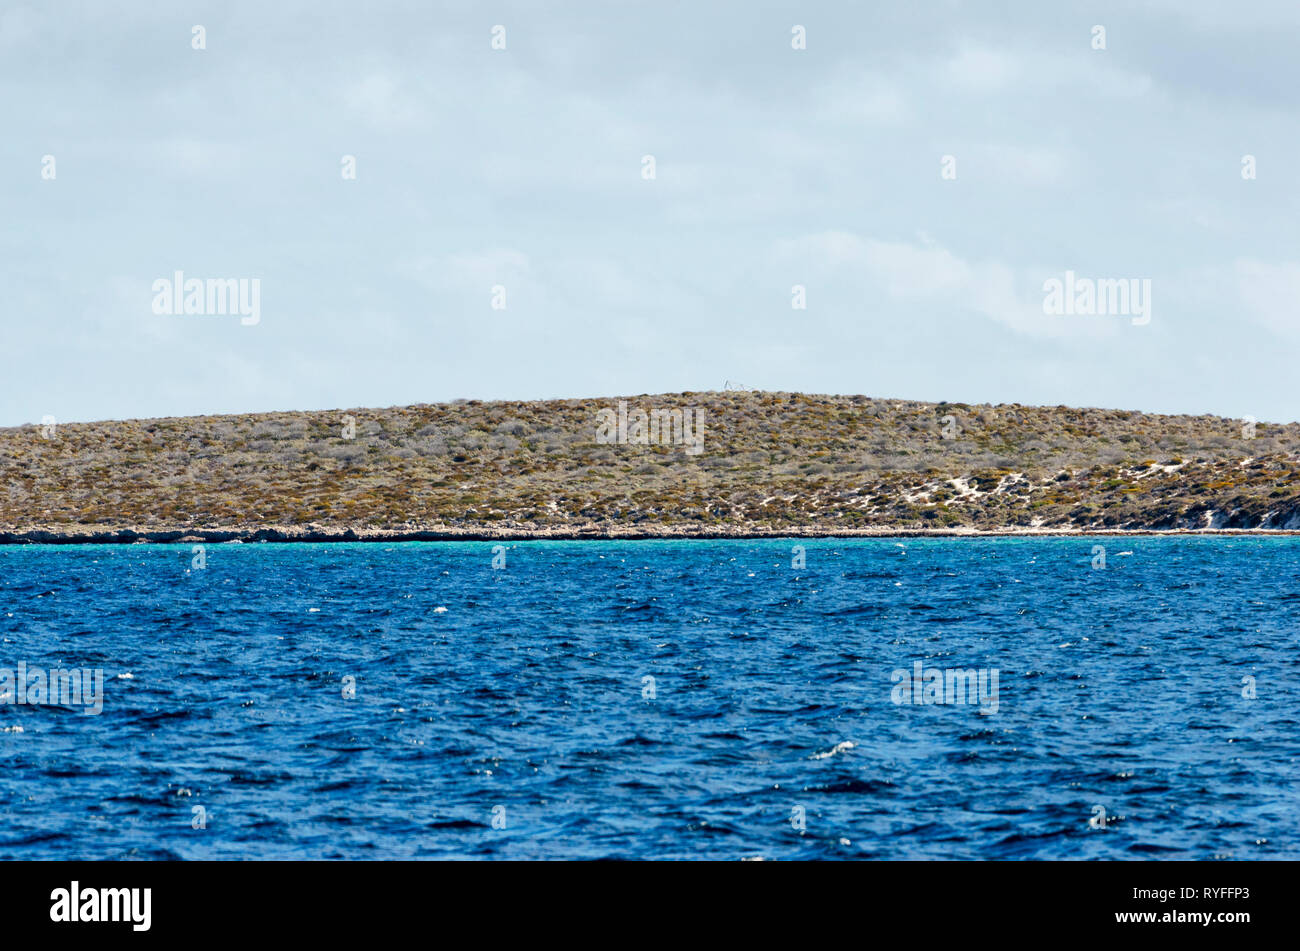 Bandiera Hill su East Wallabi isola è il punto più alto della Abrolhos a 14 metri sopra il livello del mare. Il comandante Francisco Pelsaert intervistate le isole Foto Stock